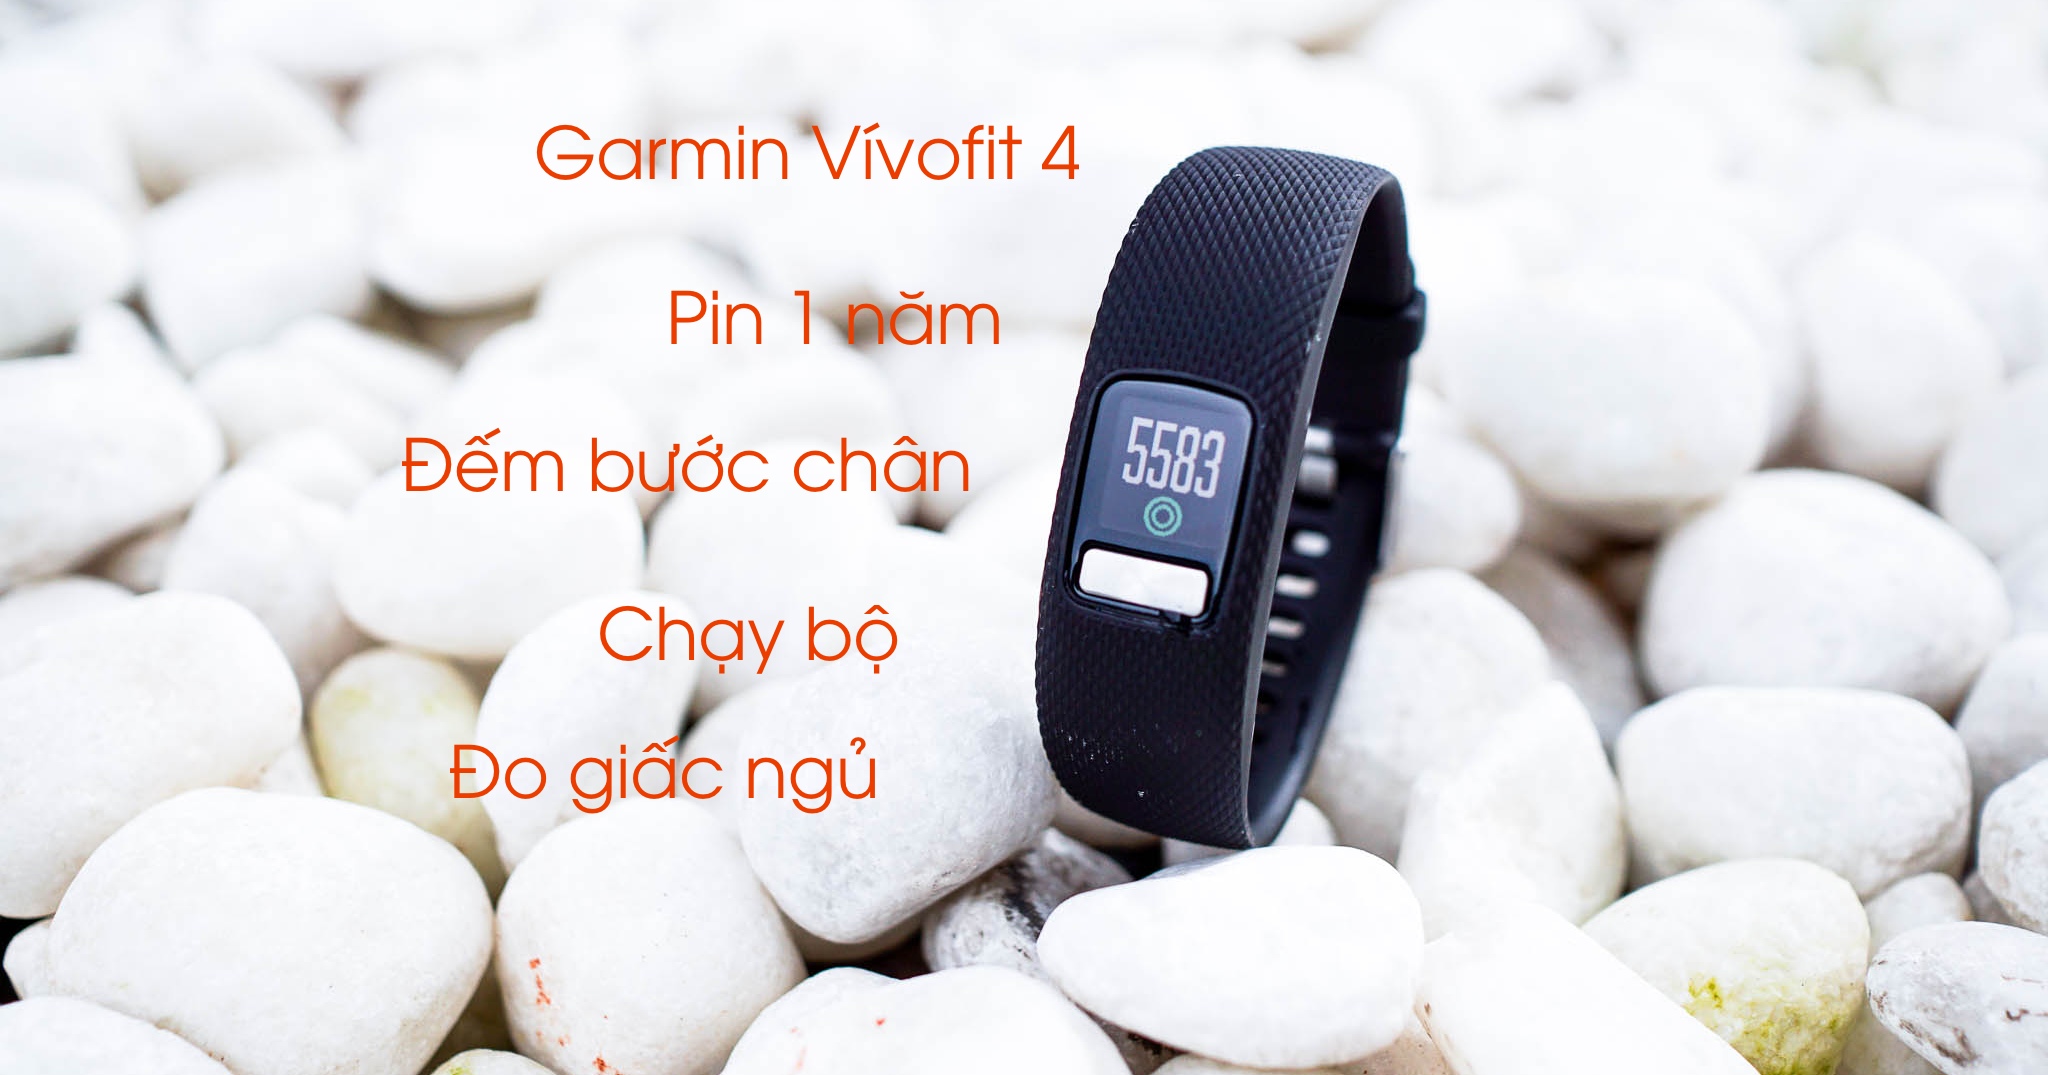 Trên tay Garmin Vivofit 4: Vòng theo dõi sức khoẻ pin 1 năm